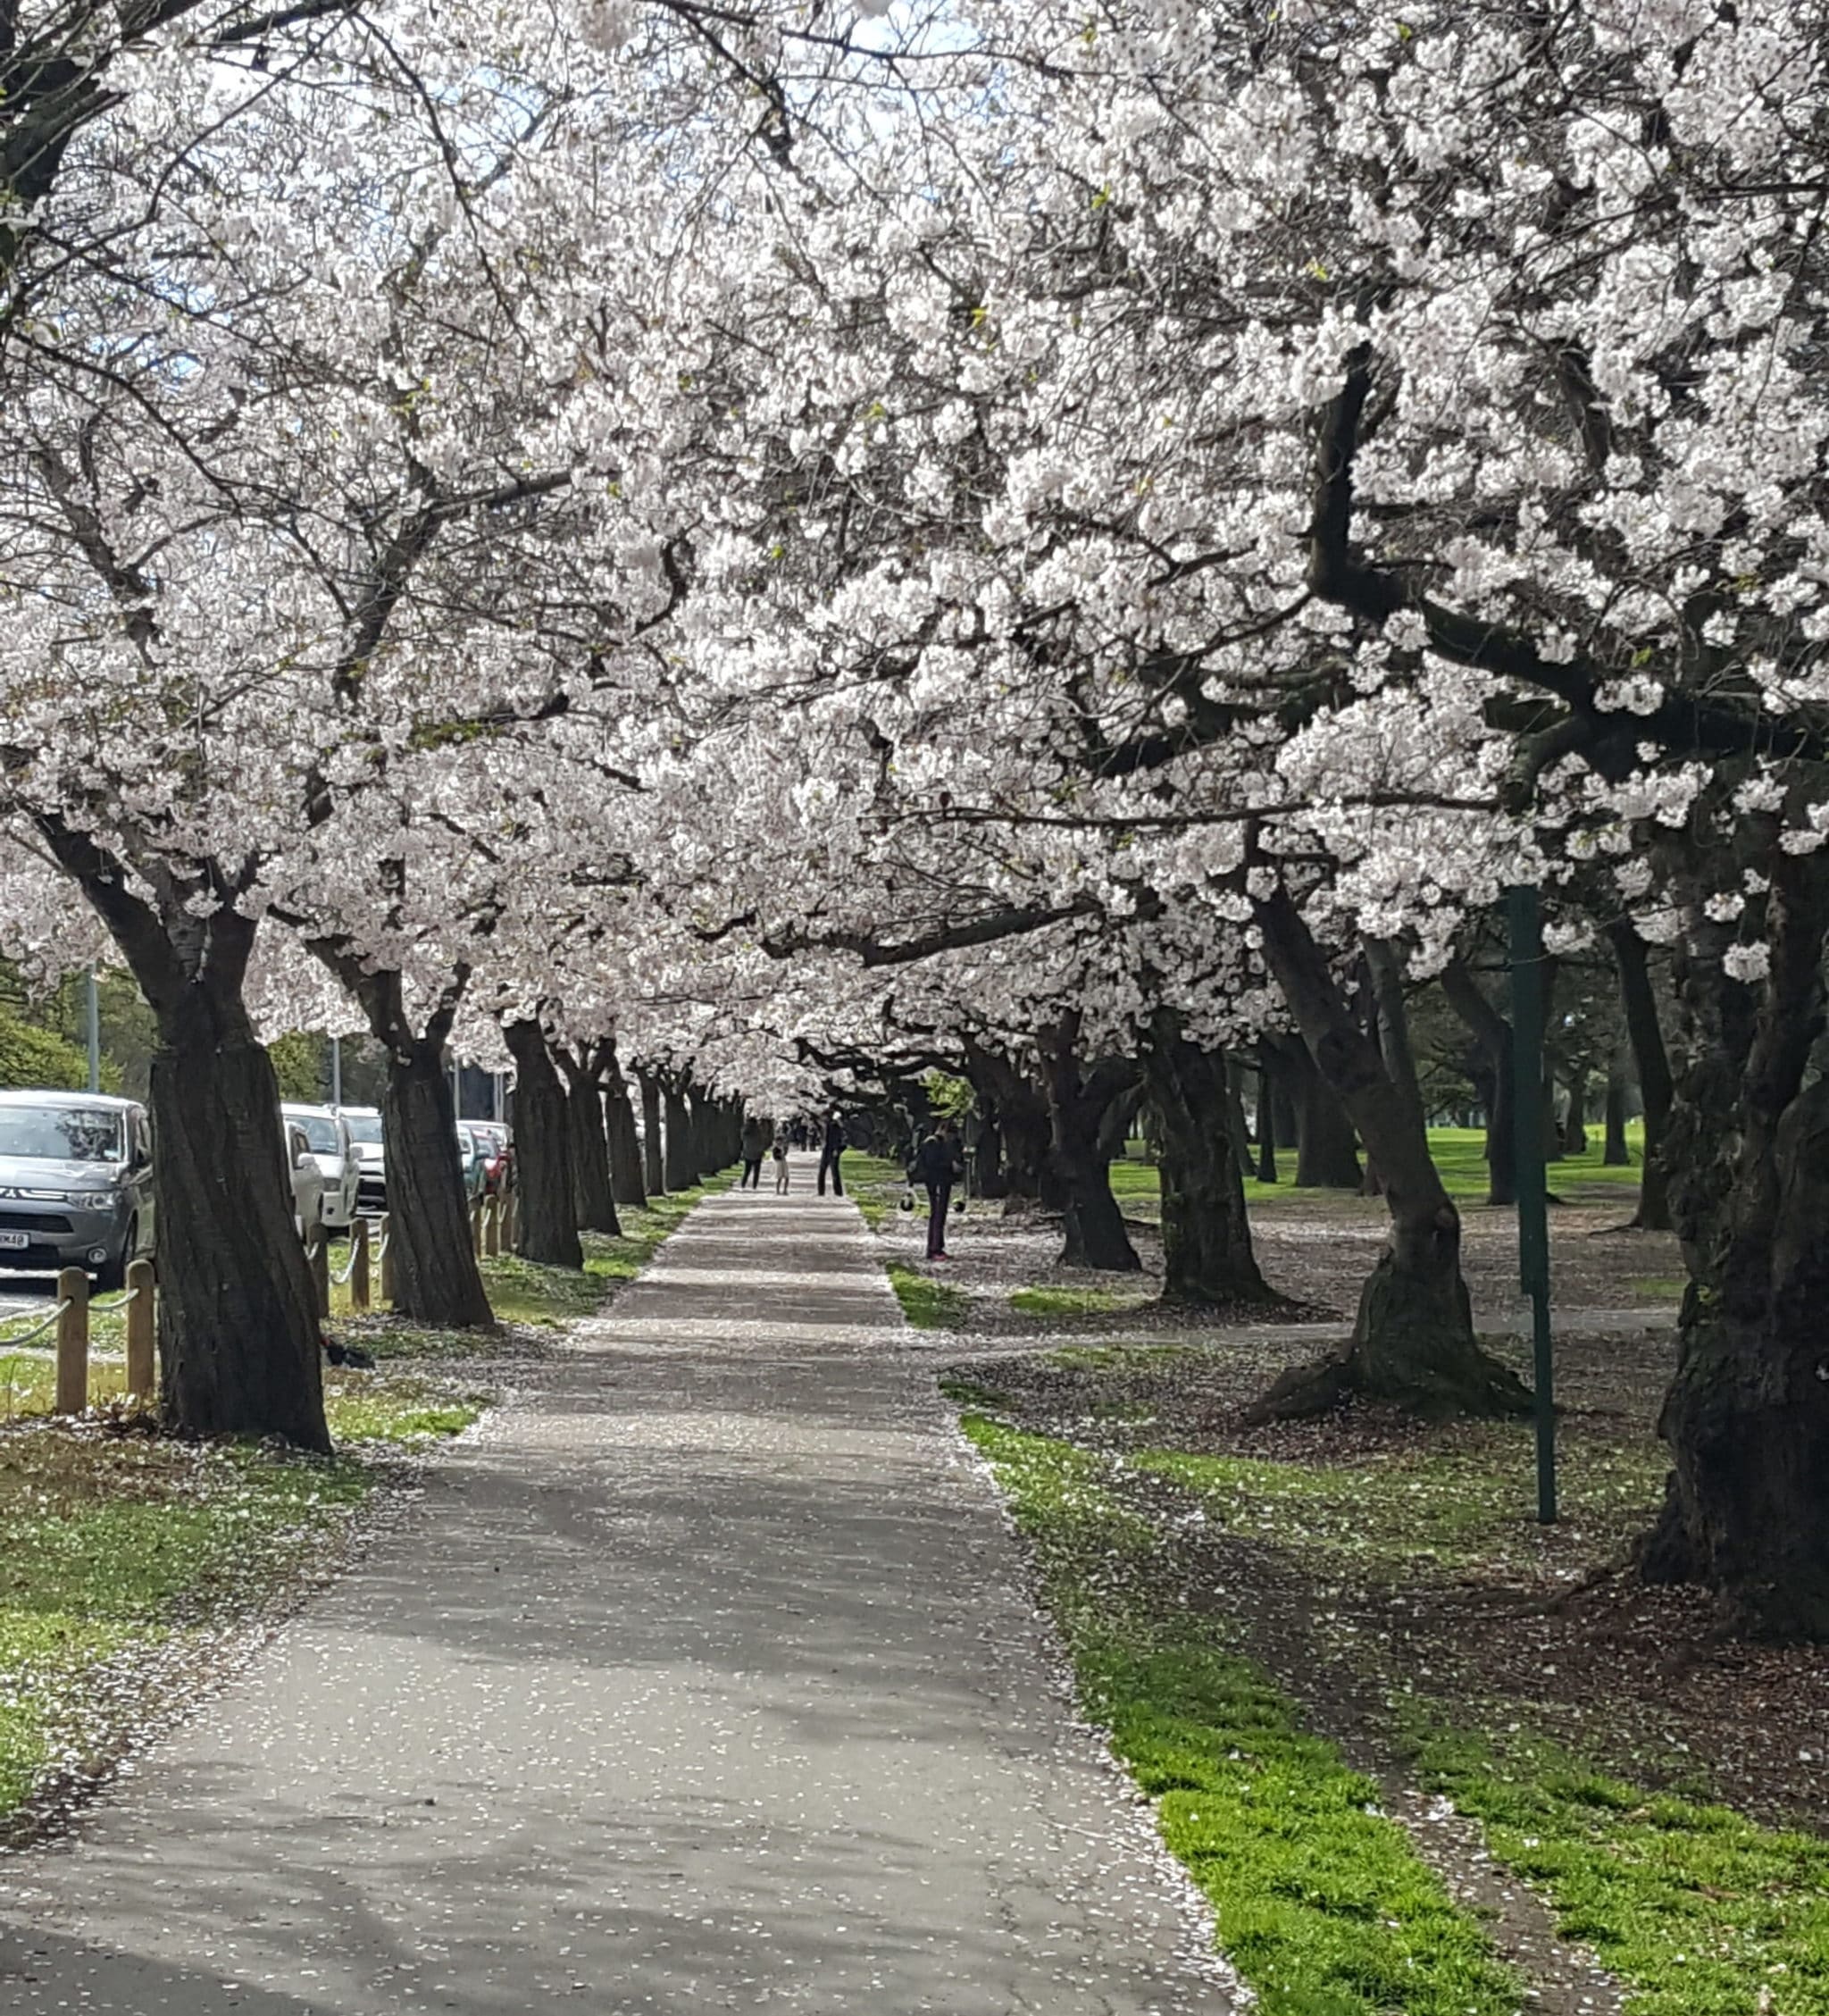 20190925 101941 e1569554271132 - Canterbury Cherry Blossoms